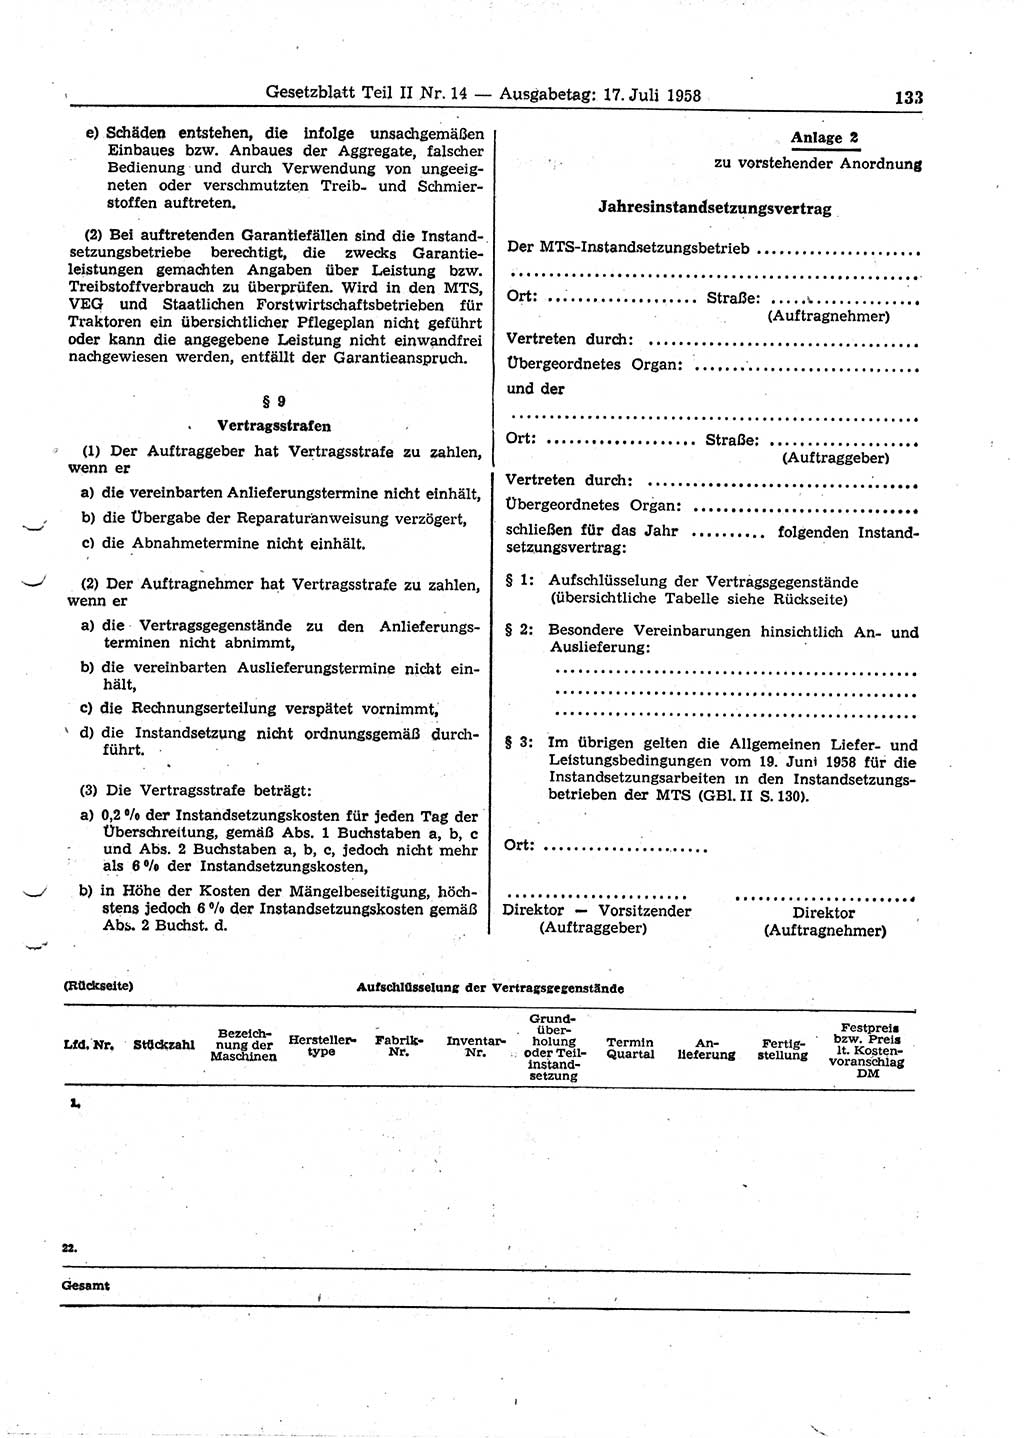 Gesetzblatt (GBl.) der Deutschen Demokratischen Republik (DDR) Teil ⅠⅠ 1958, Seite 133 (GBl. DDR ⅠⅠ 1958, S. 133)